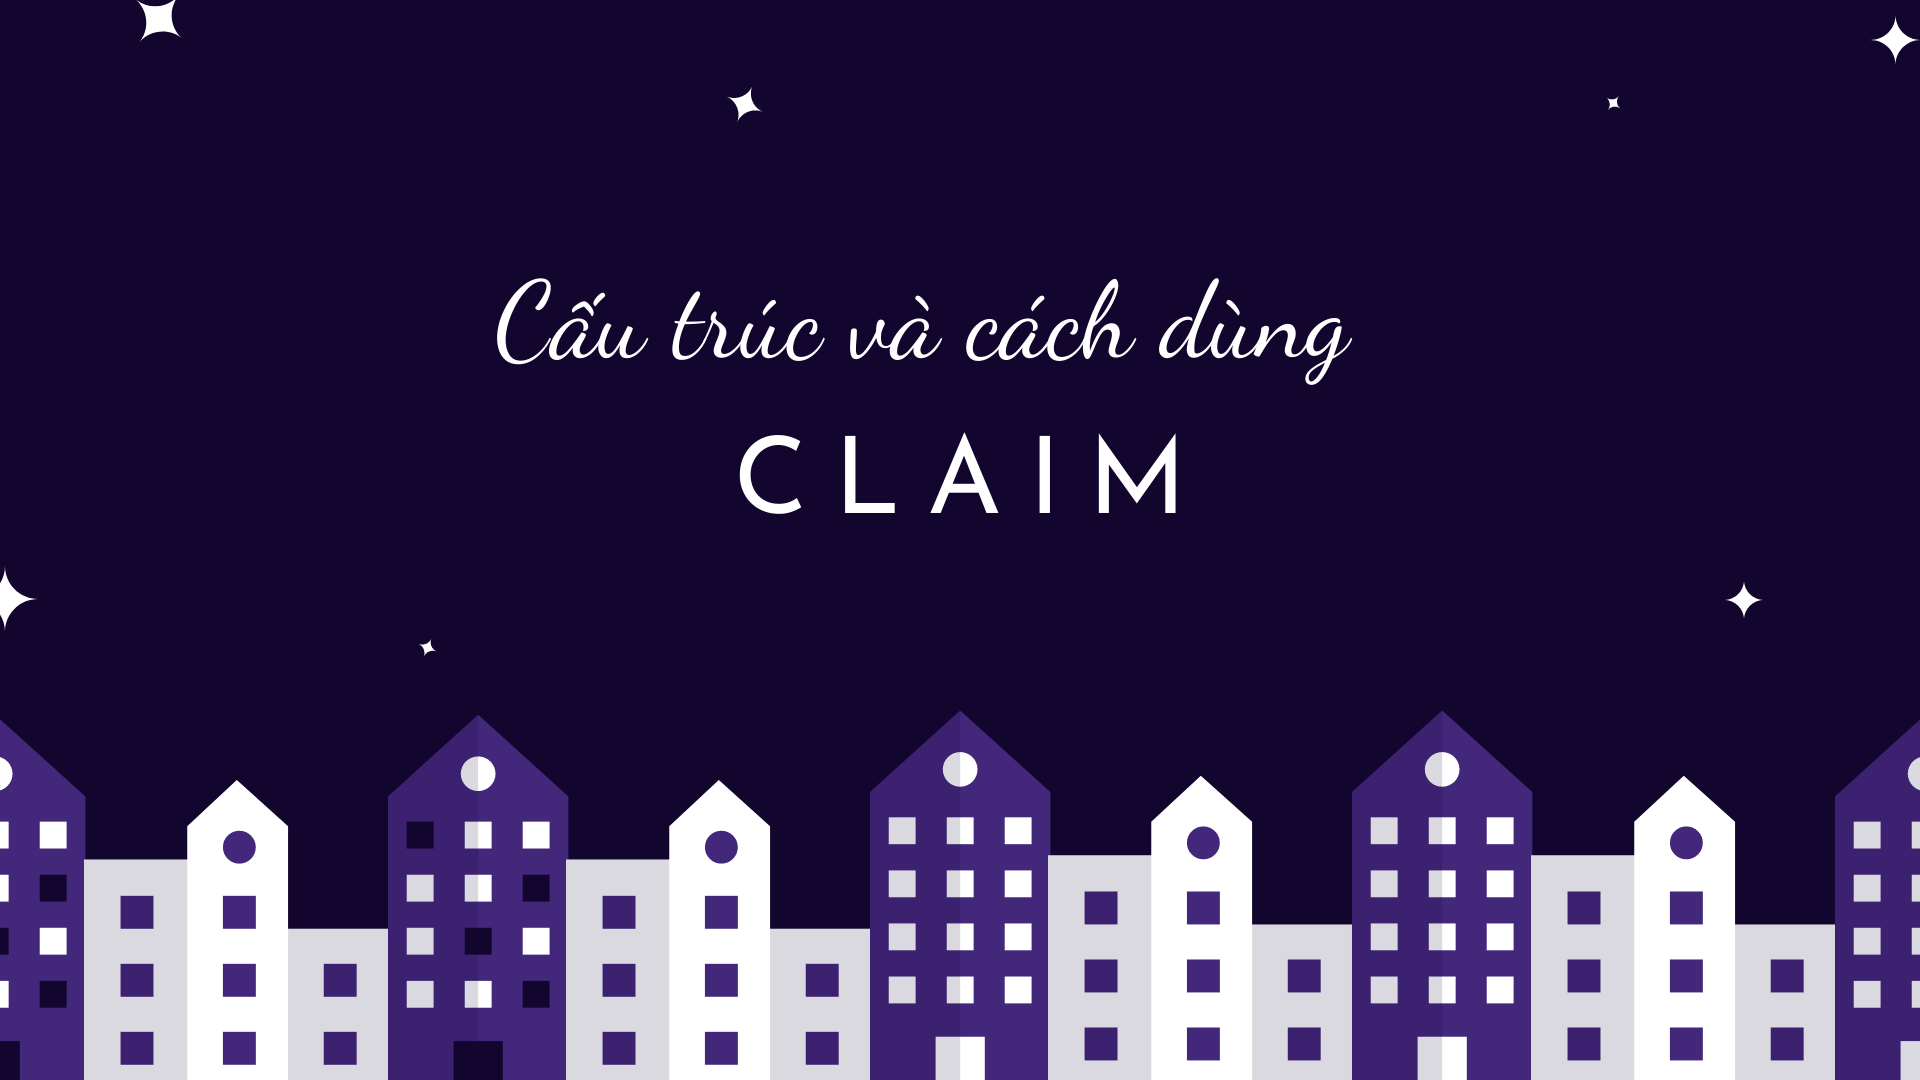 claim là gì